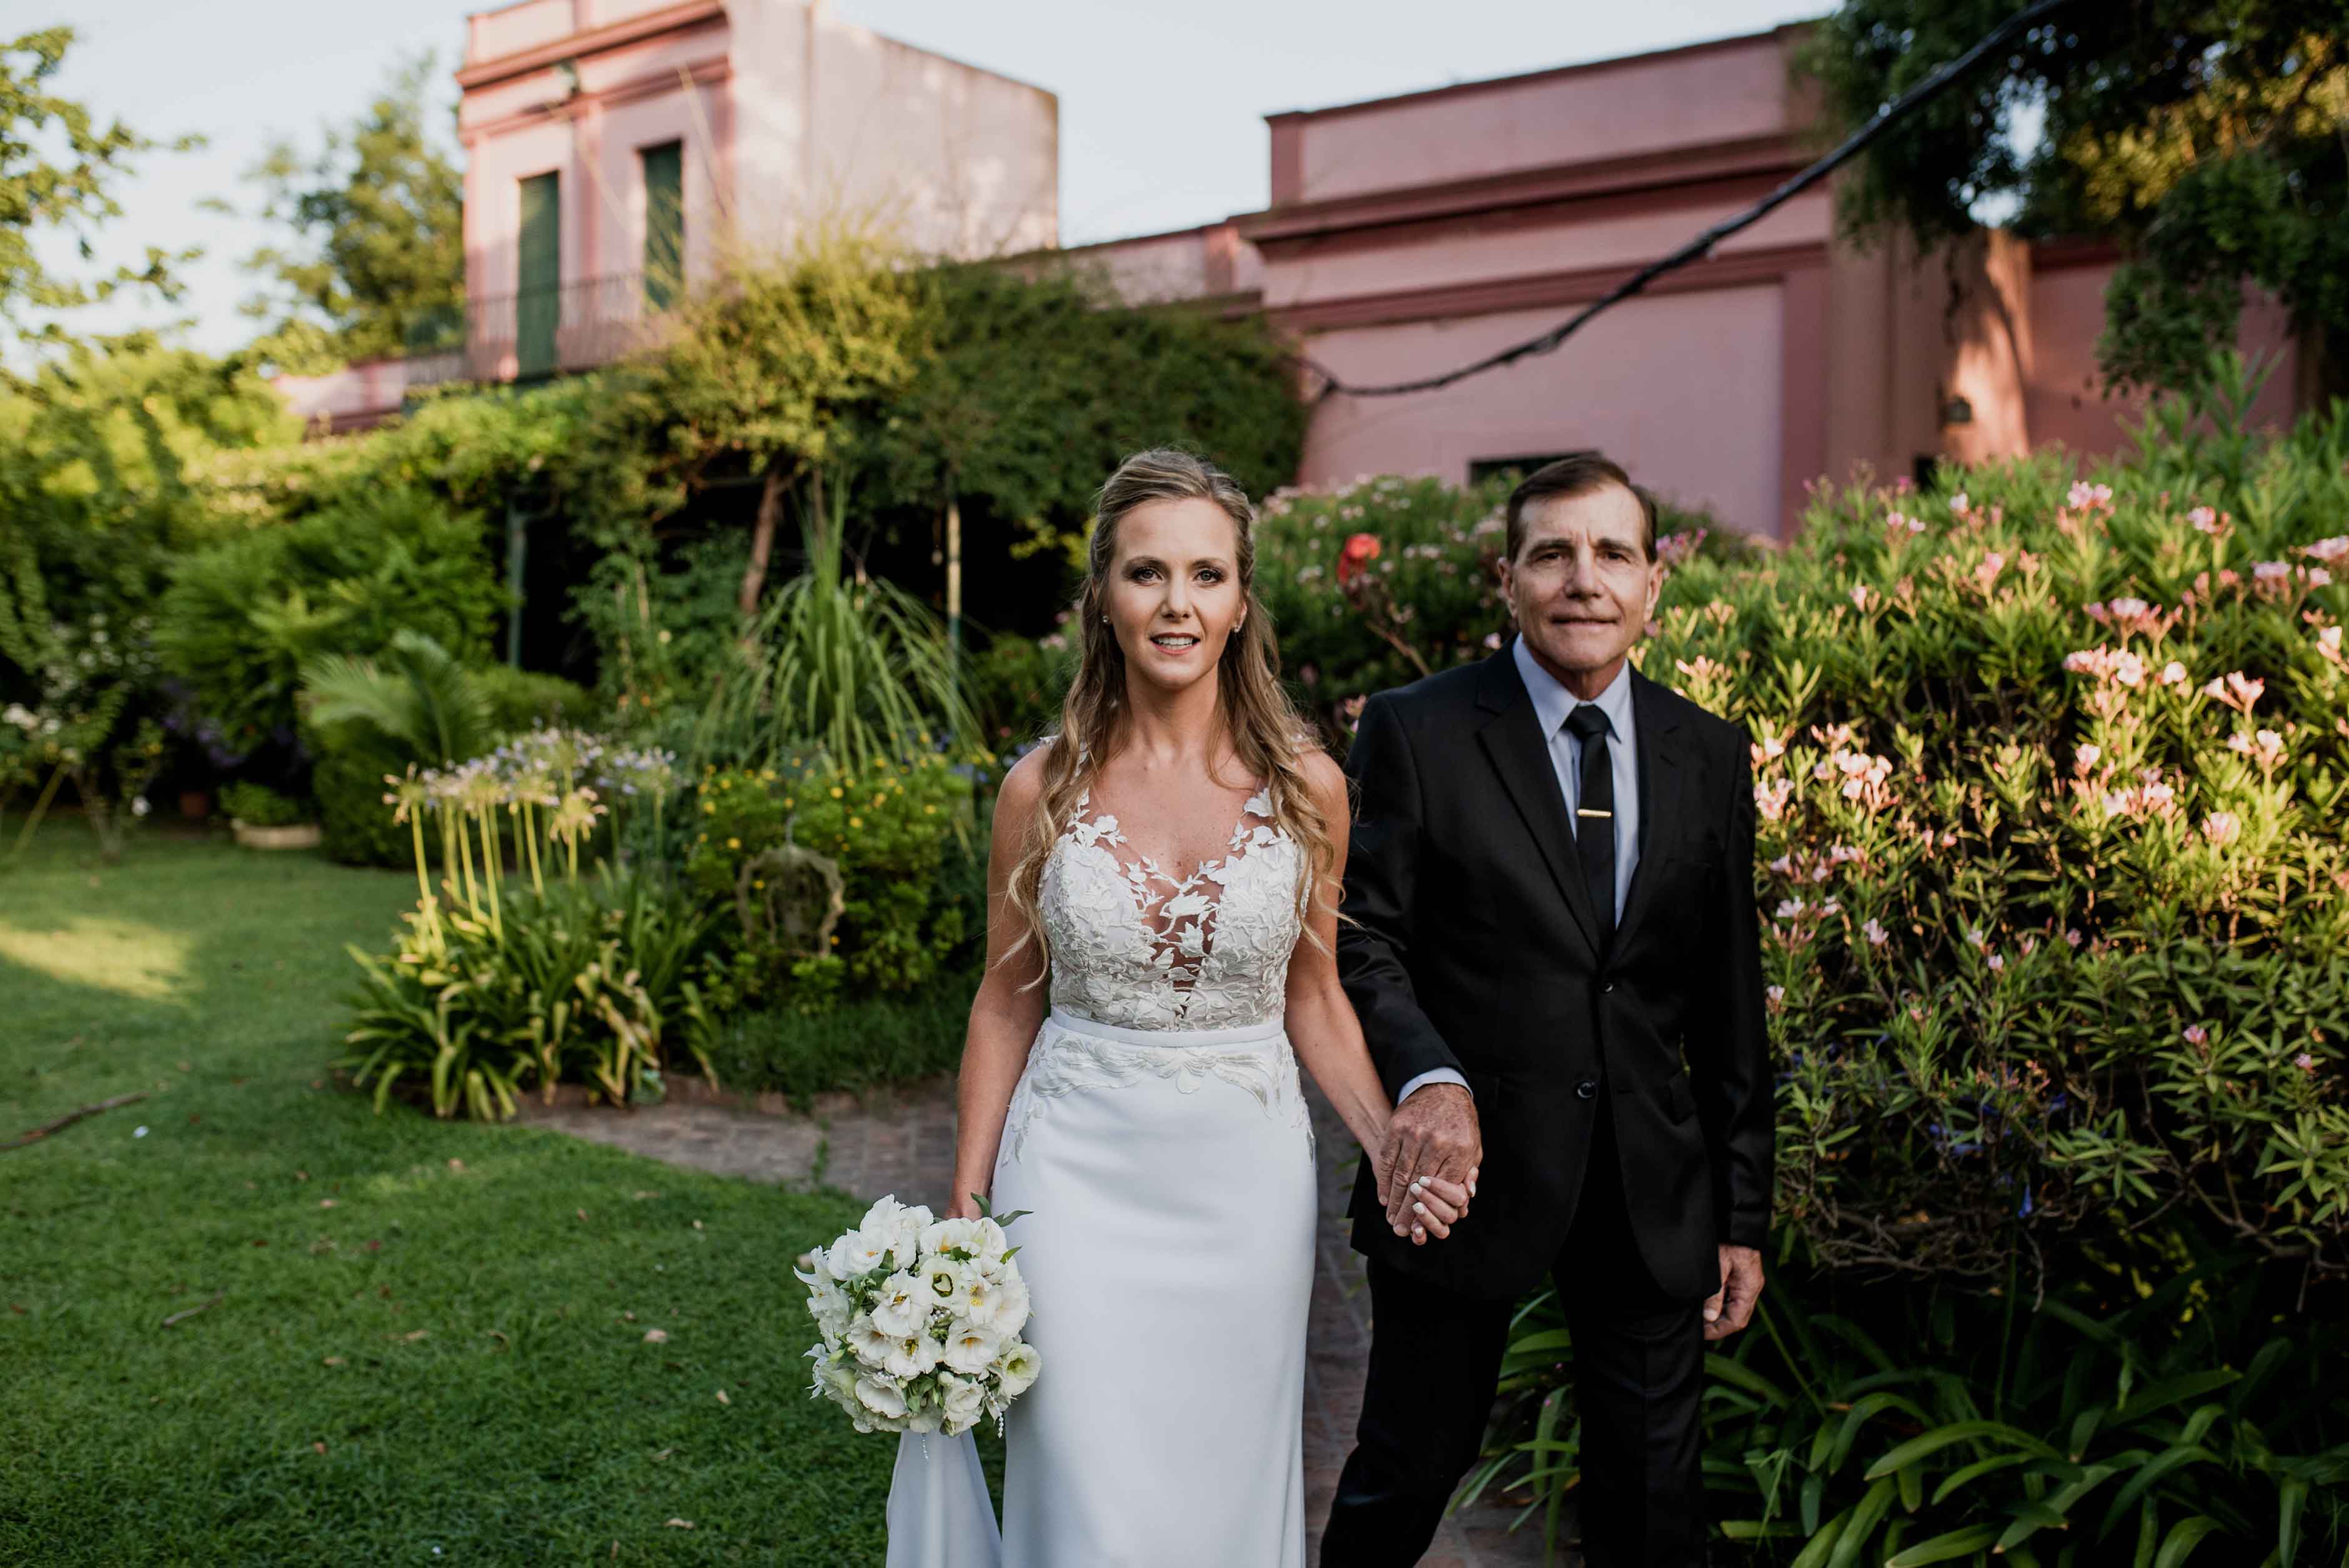 Fotos de la boda de Vane y Diego en Casilda realizadas por Bucle Fotografias Flor Bosio y Caro Clerici